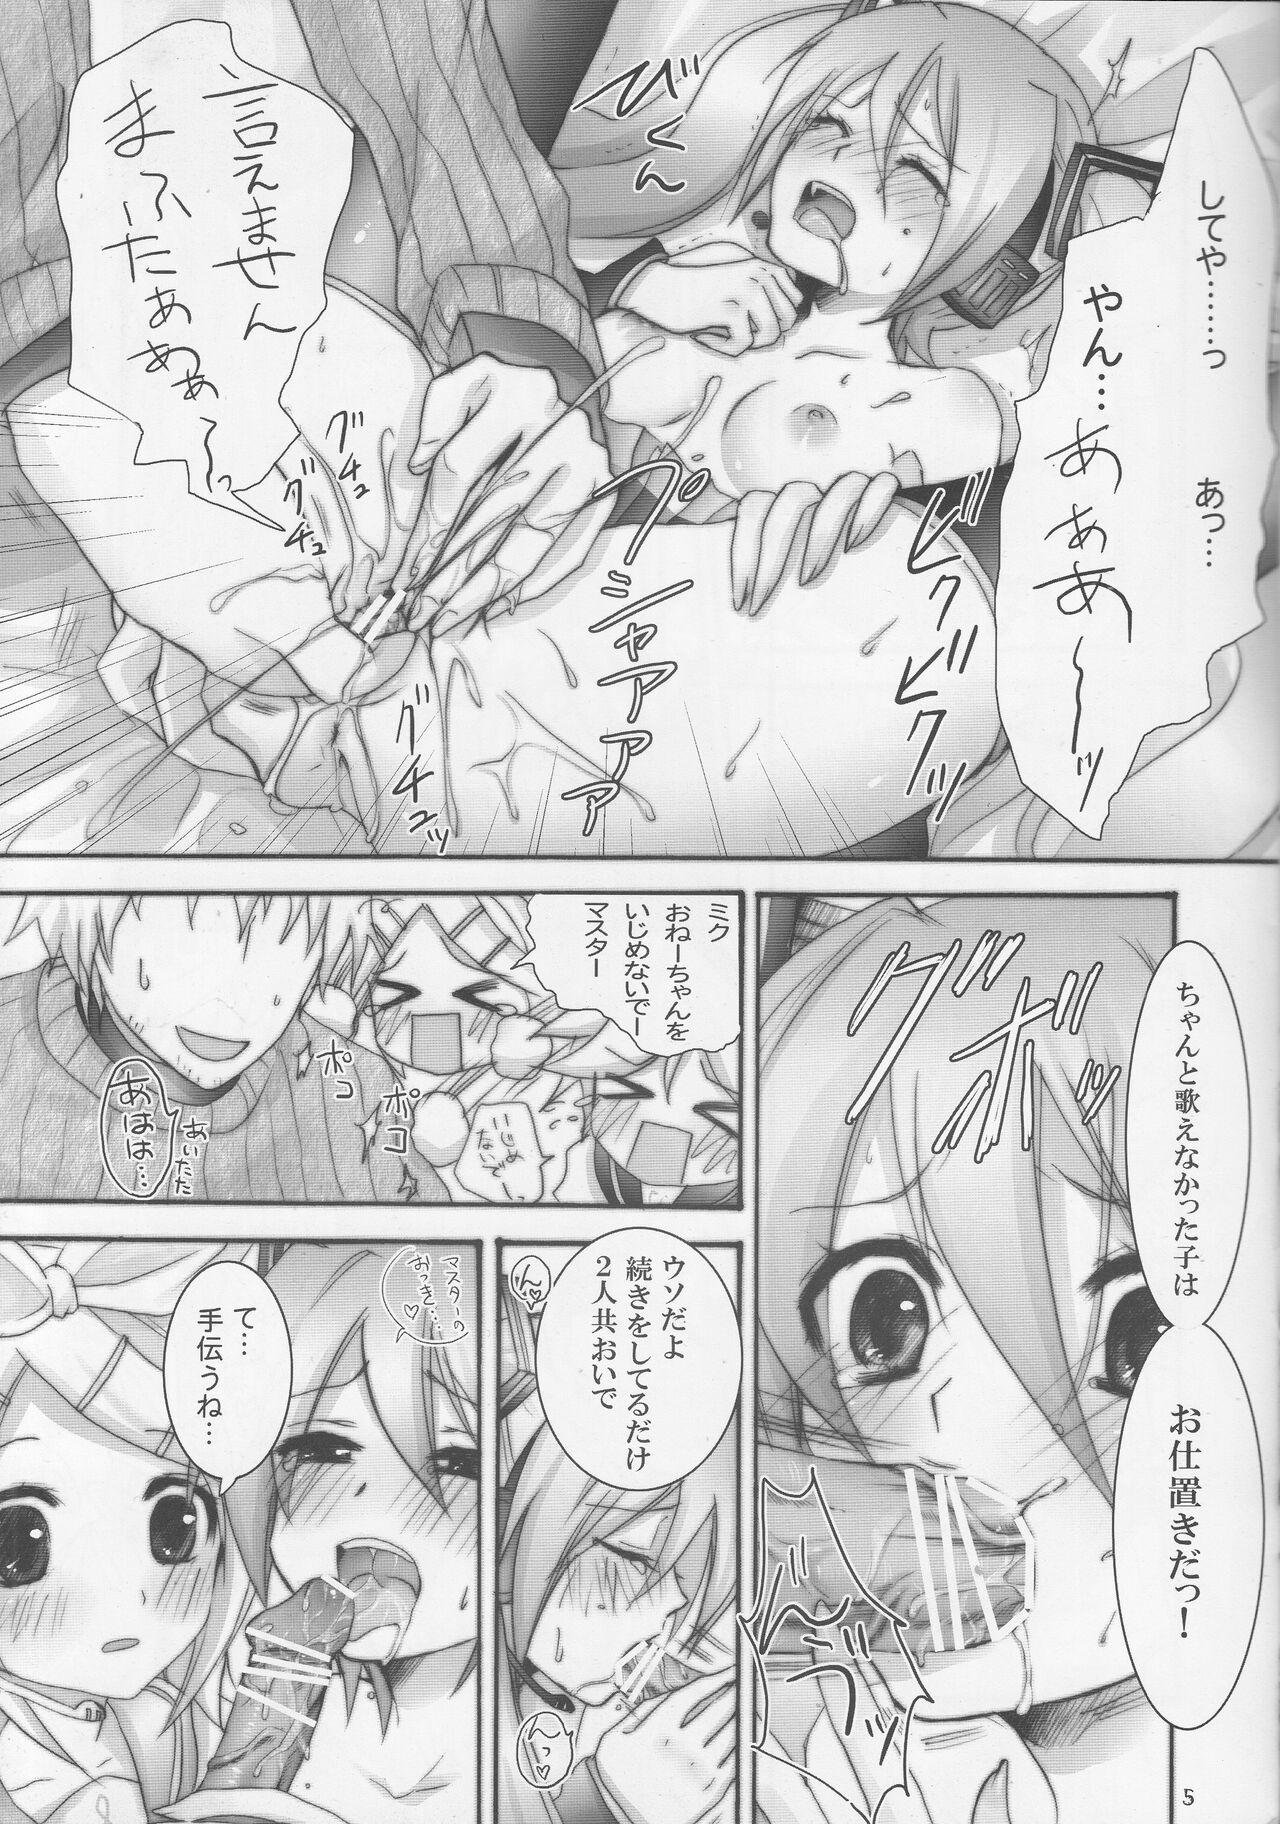 Jerkoff Masutā taihen! Bōkaroido ni jūdaina erā ga hassei shimashita! - Vocaloid Gaysex - Page 4